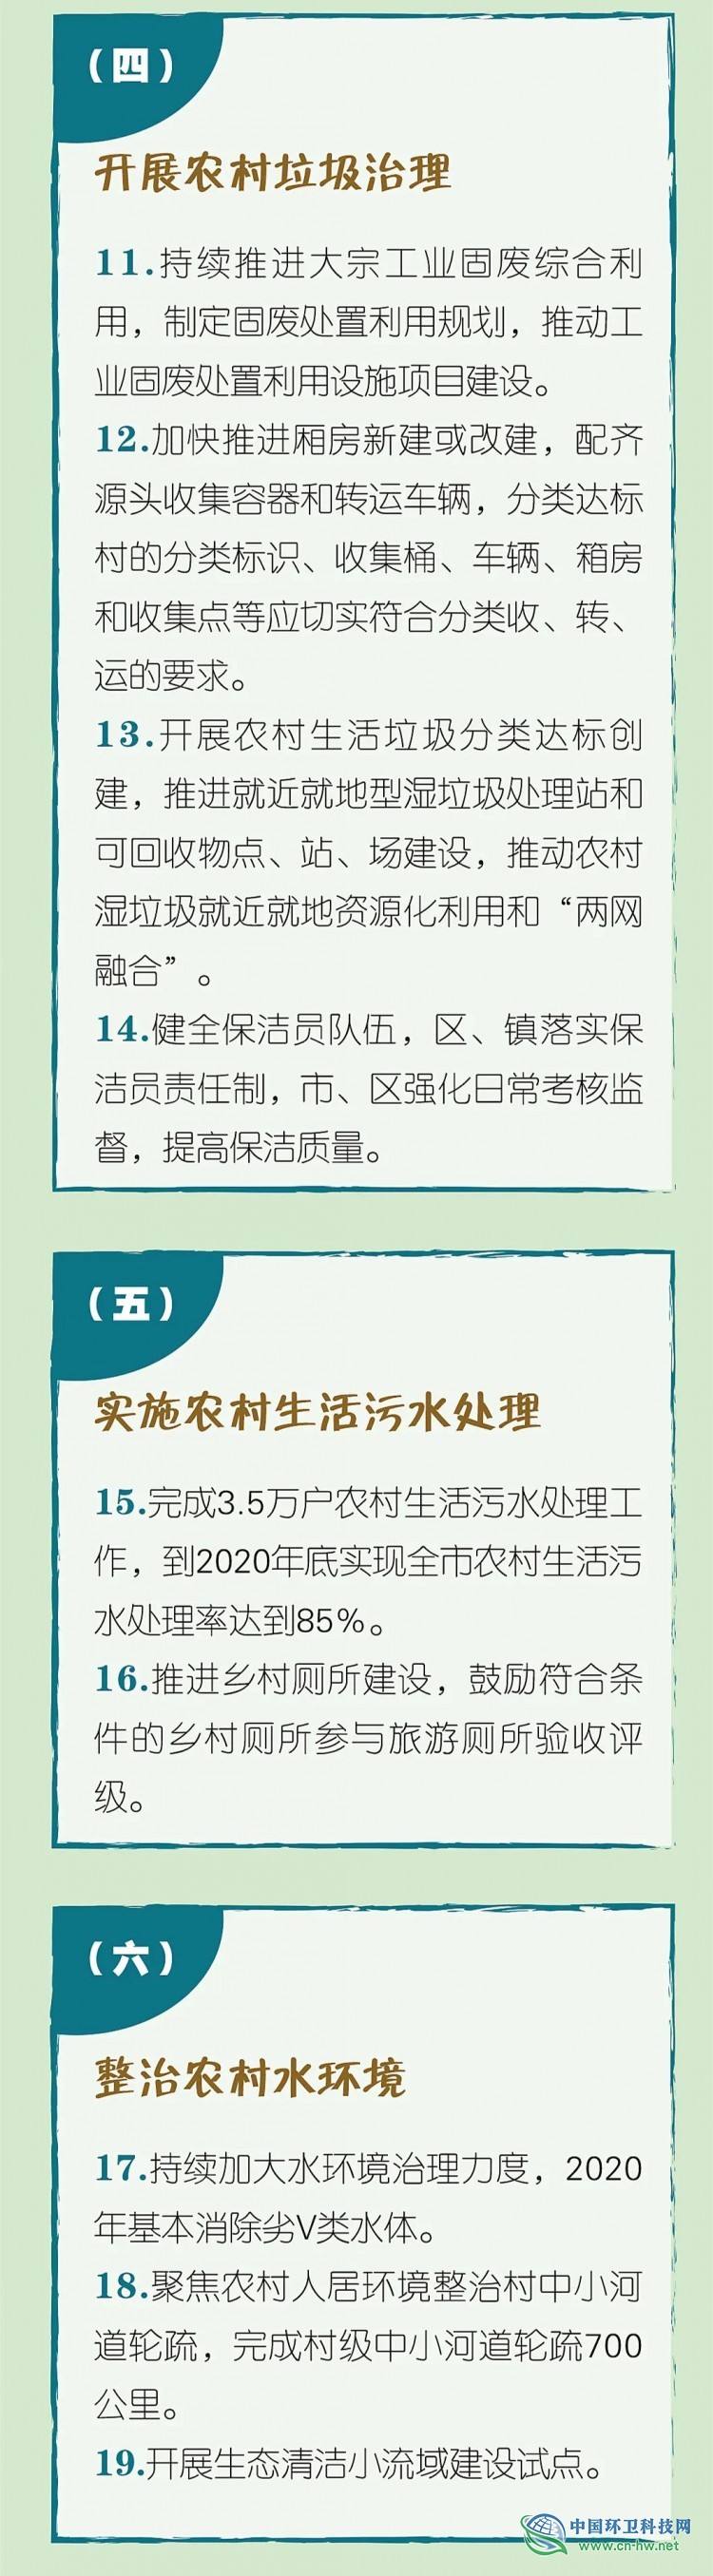 一图读懂 | 2020年上海市农村人居环境整治任务清单